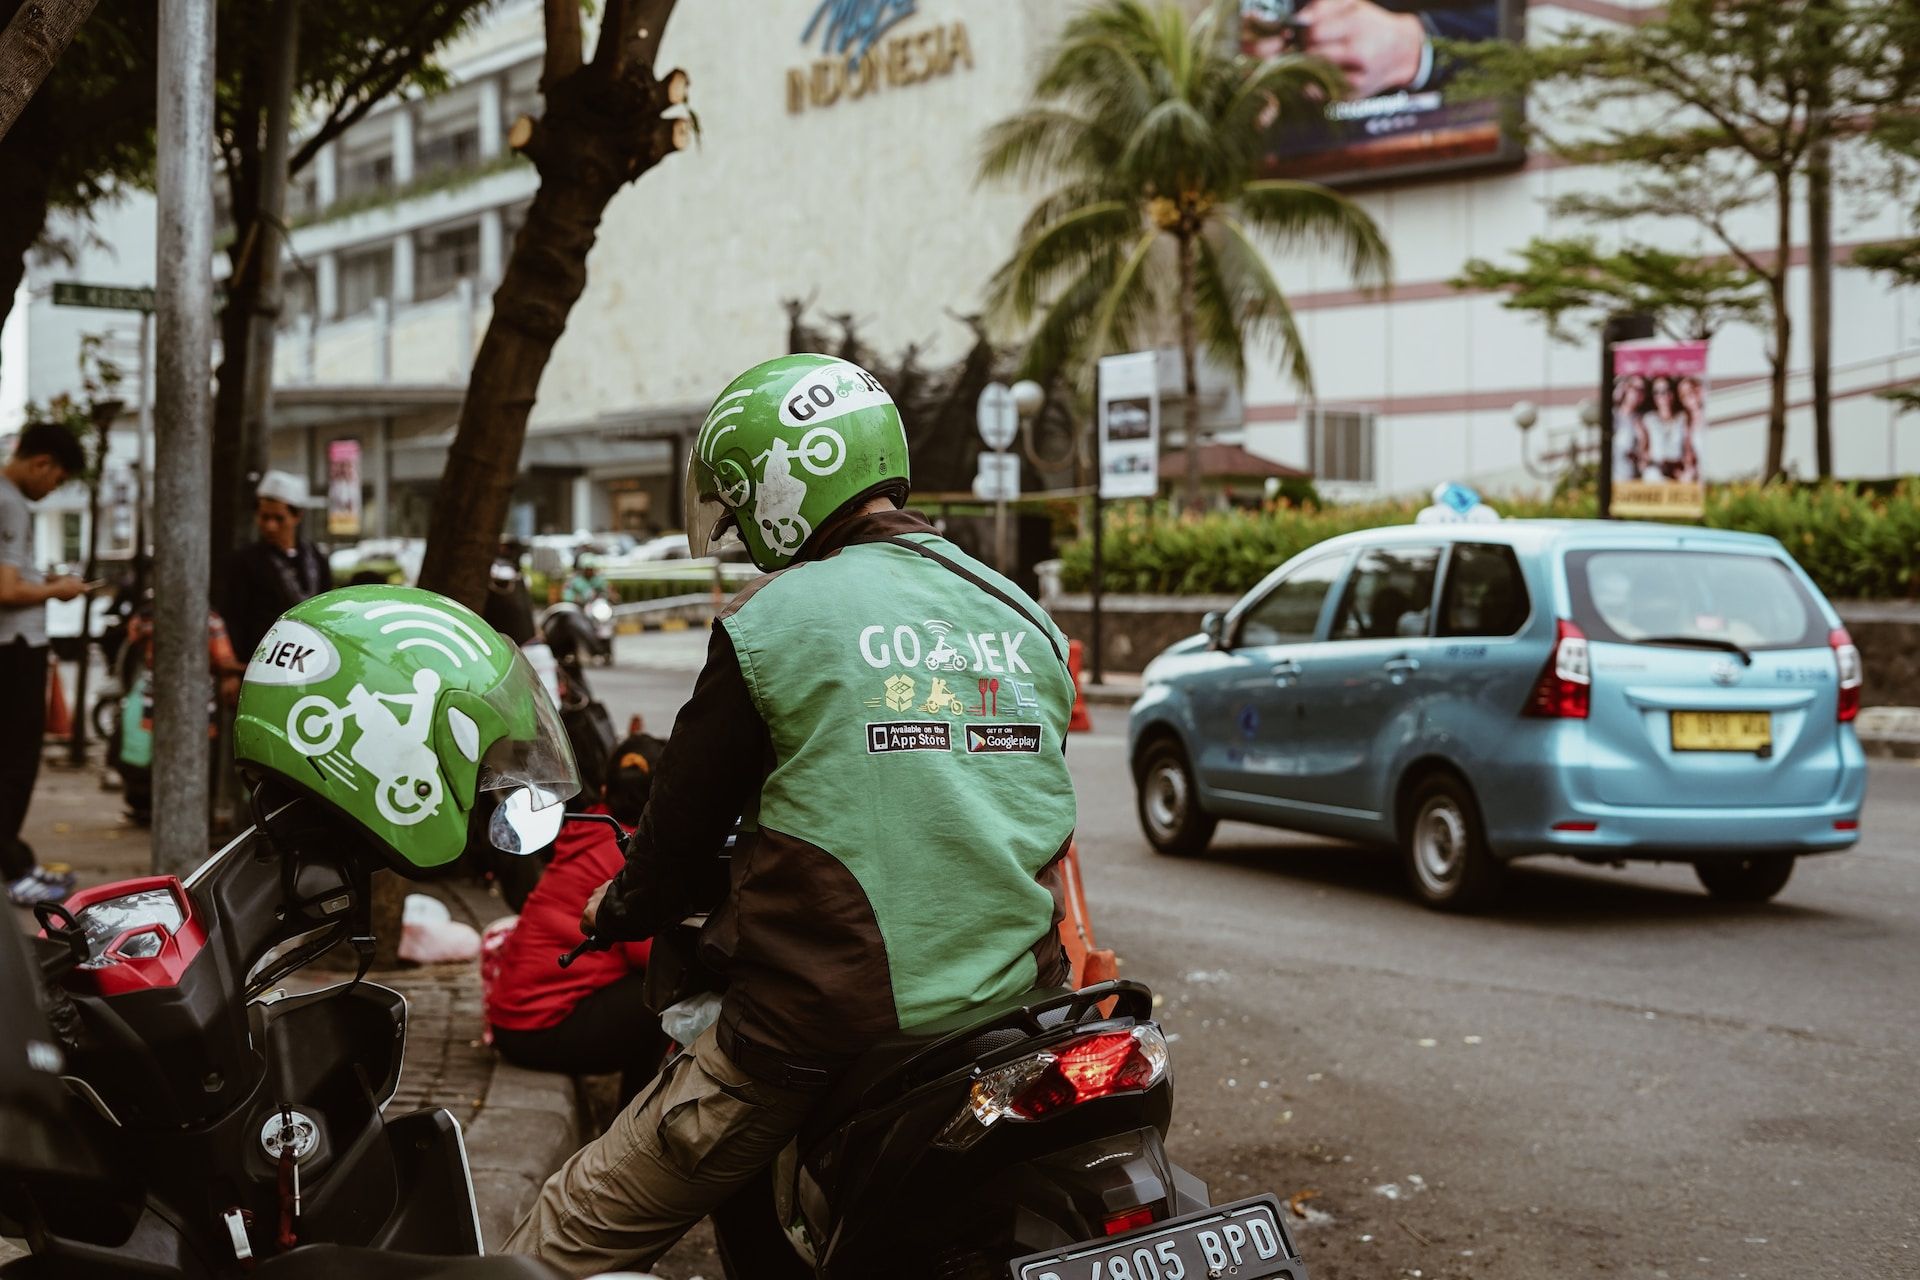 Person on a Gojek bike in Bali